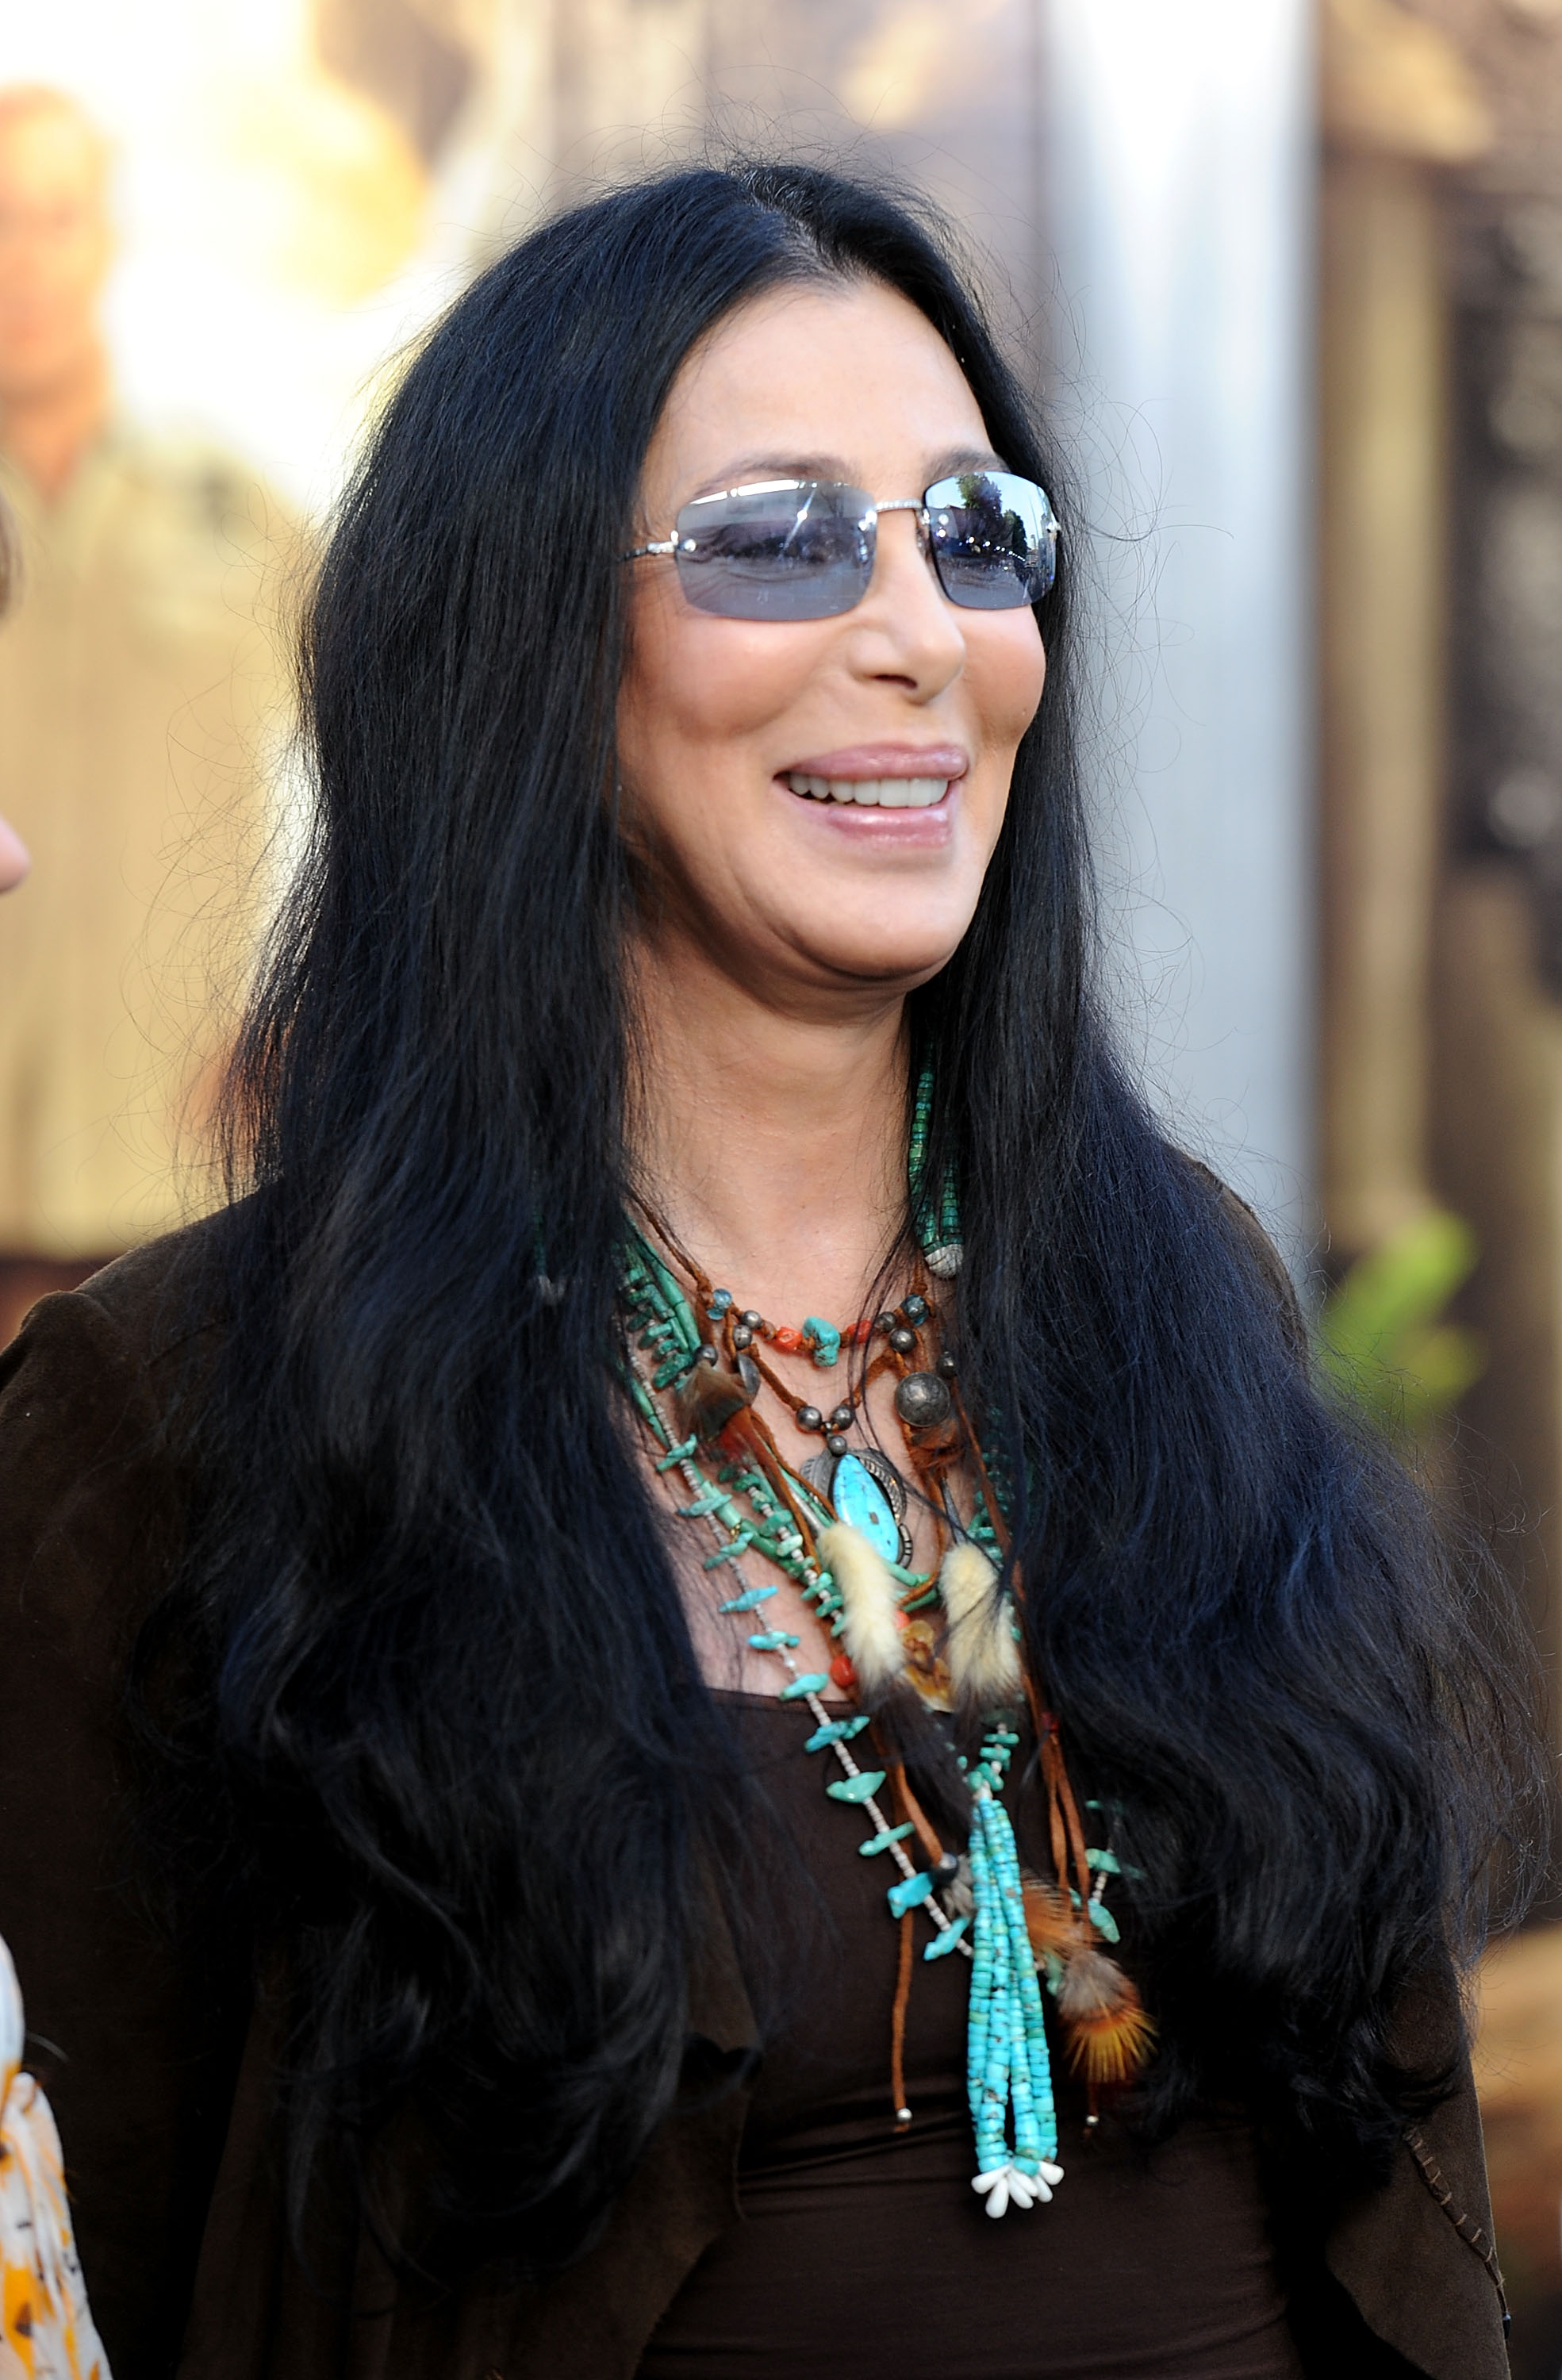 Cher llega al estreno de "The Zookeeper" en el Regency Village Theater, Westwood el 6 de julio de 2011, en Los Ángeles, California. | Foto: Getty Images